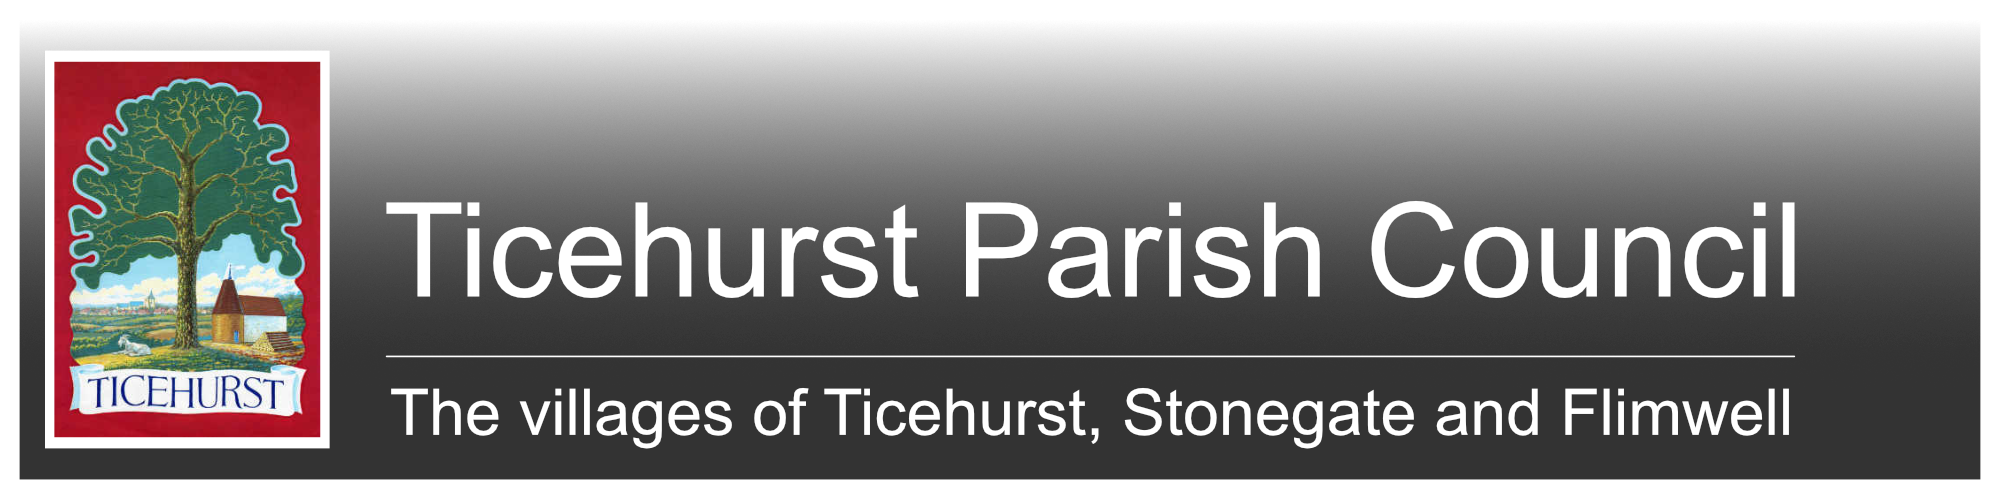 Ticehurst Parish Council